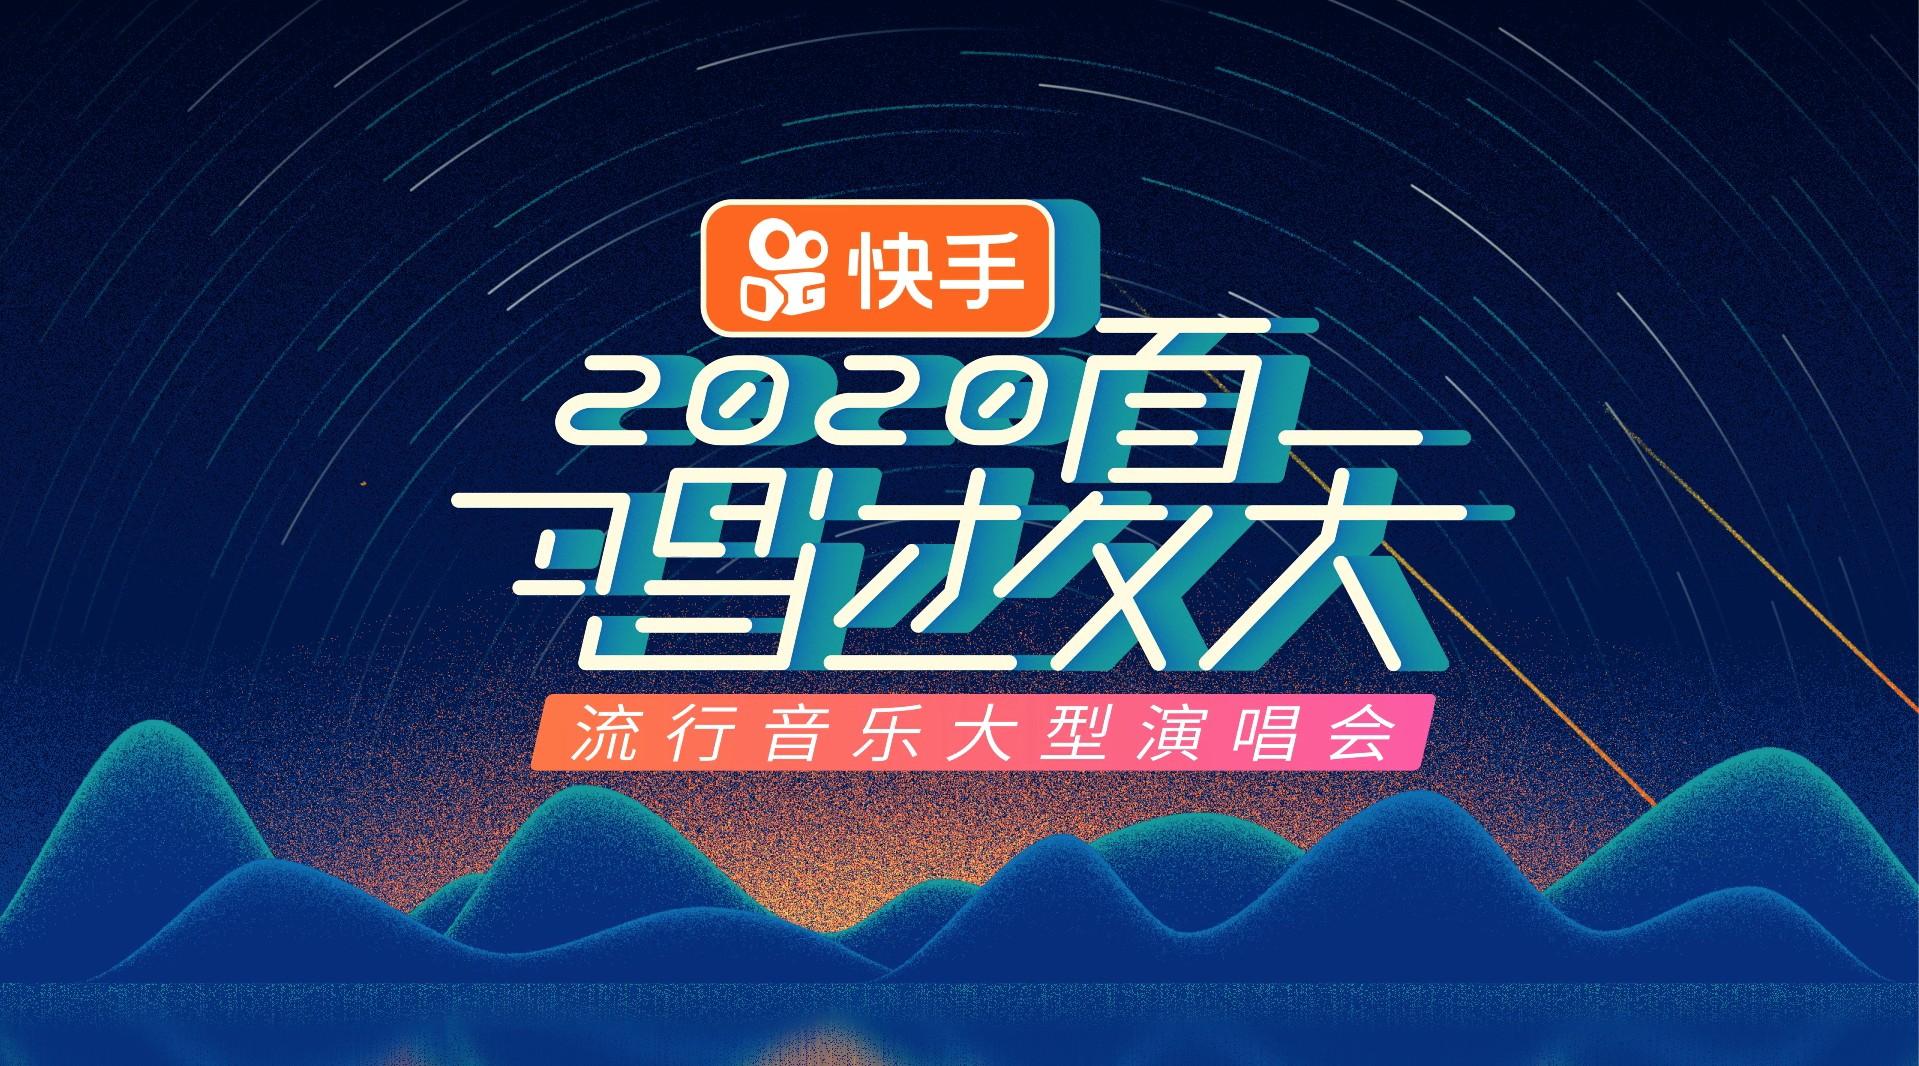 2020 央视综艺频道《唱过夏天》节目片头